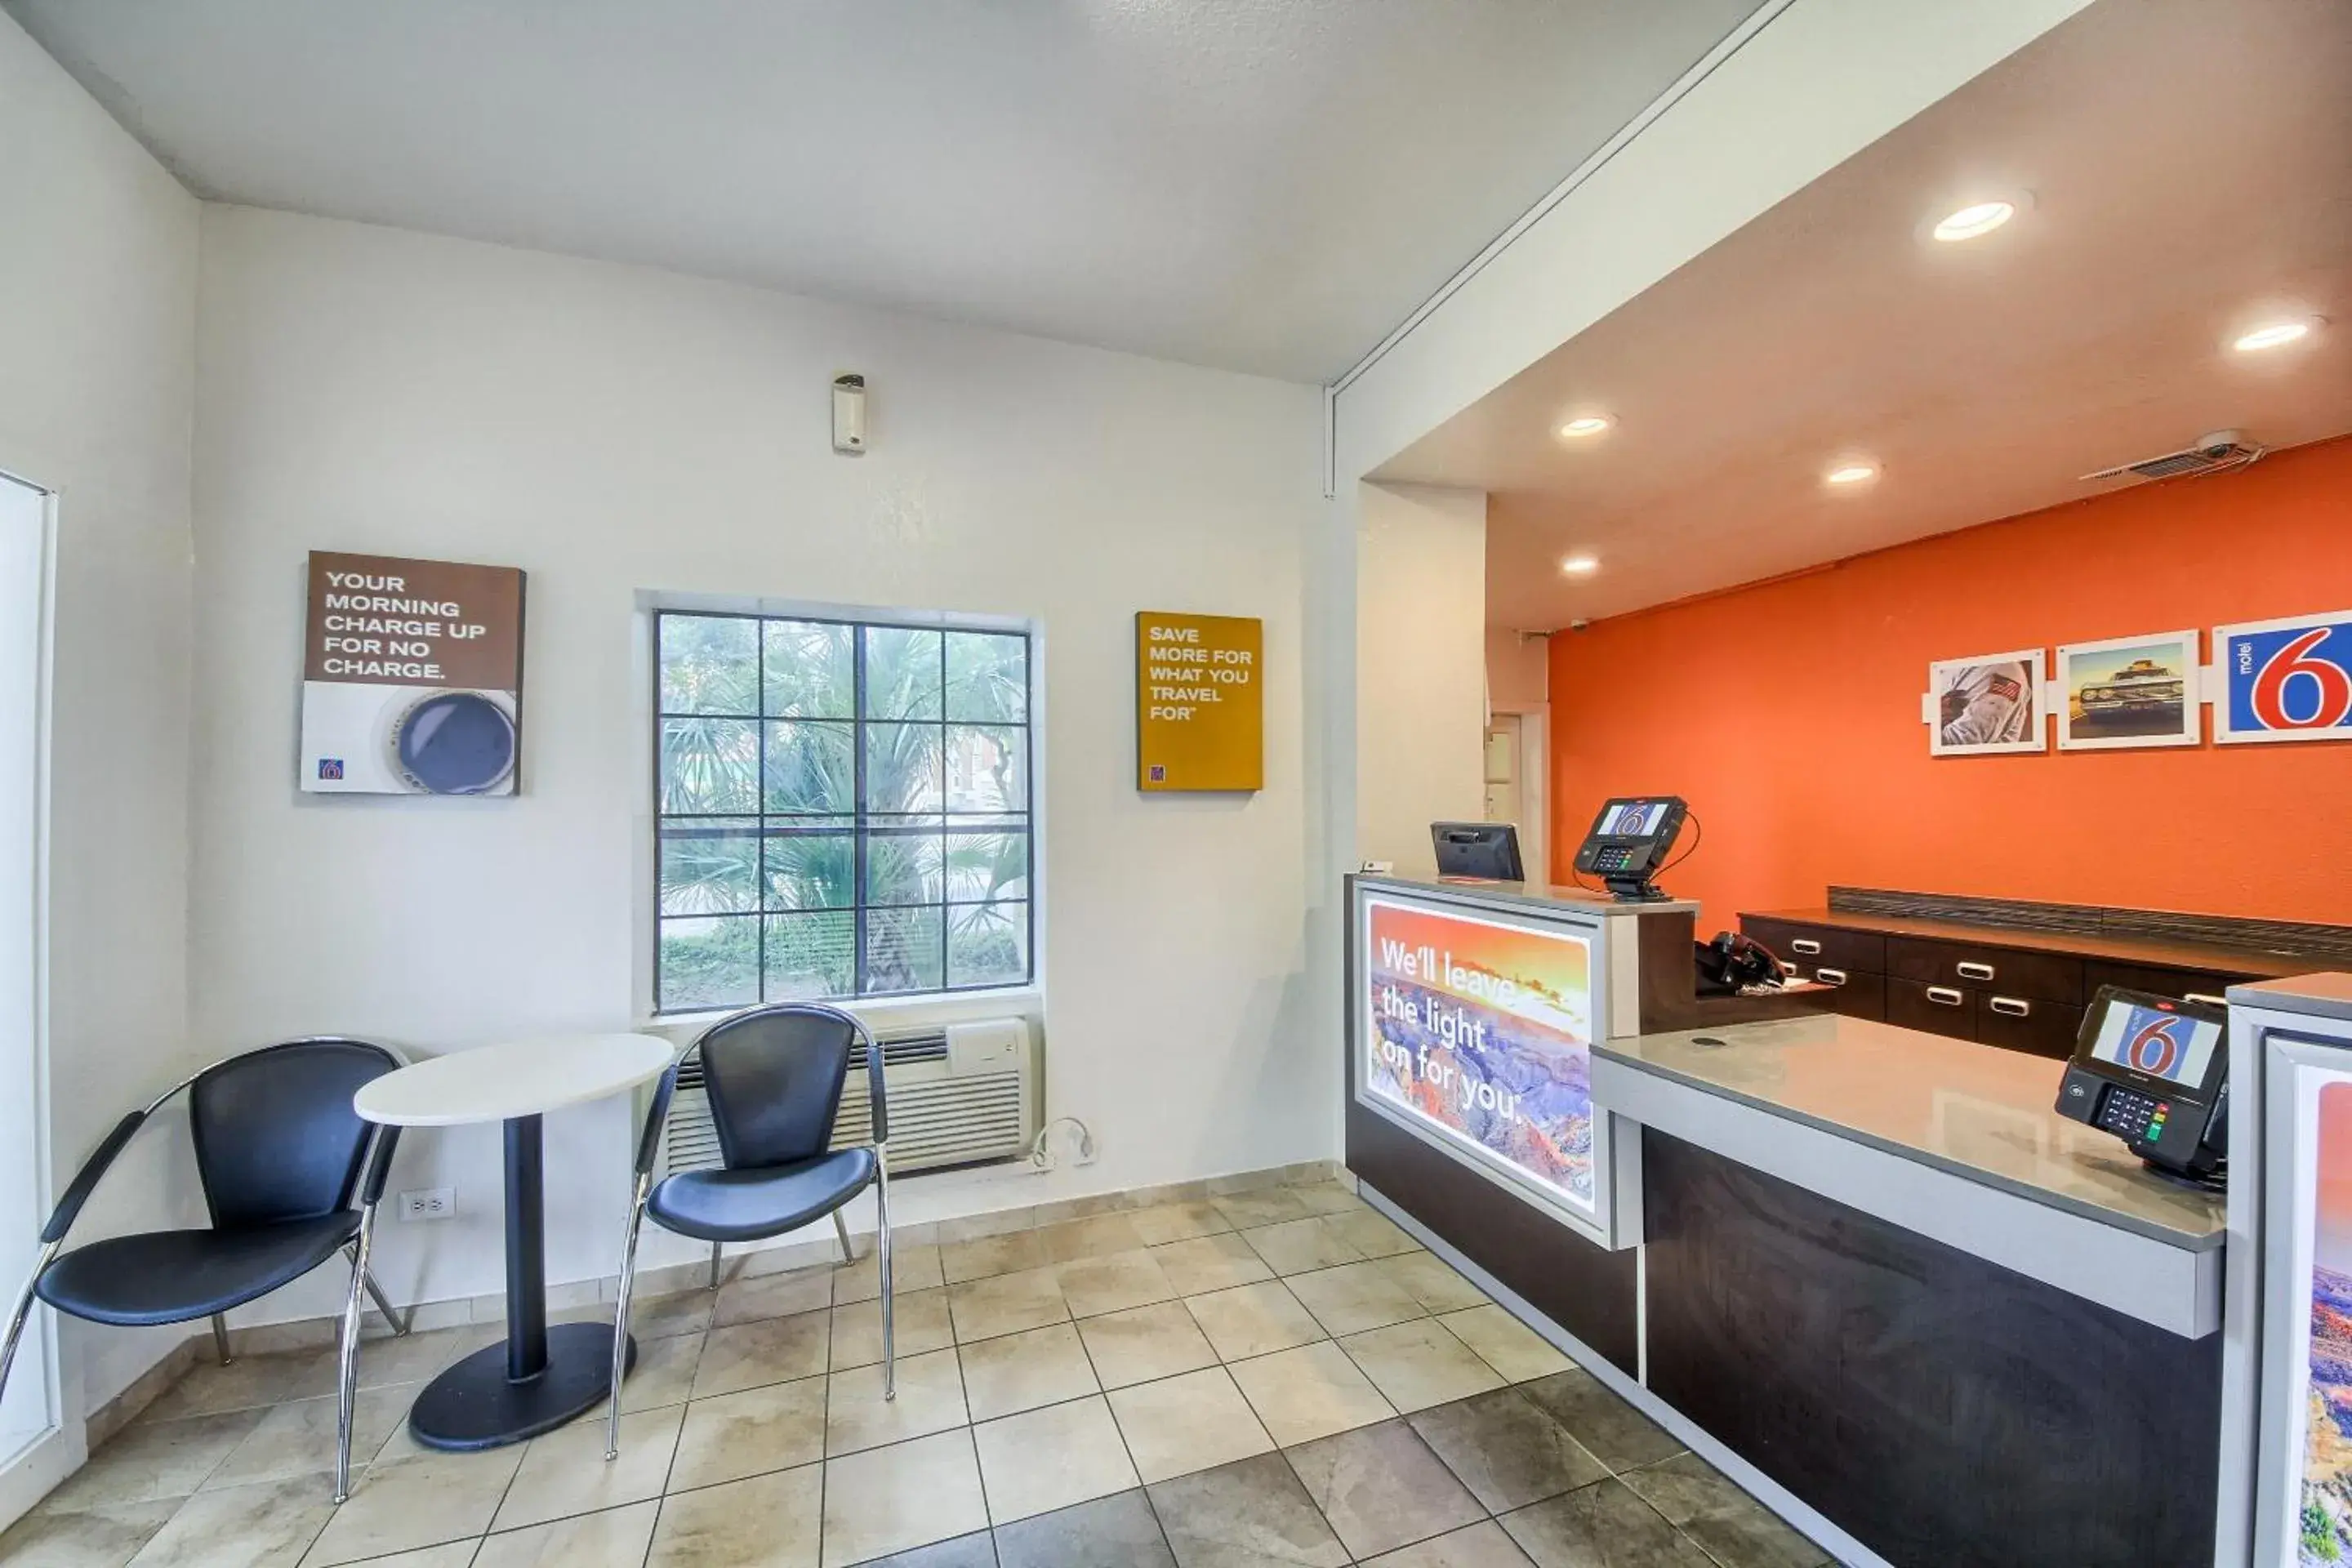 Lobby or reception, Lobby/Reception in Motel 6-San Antonio, TX - Northwest Medical Center